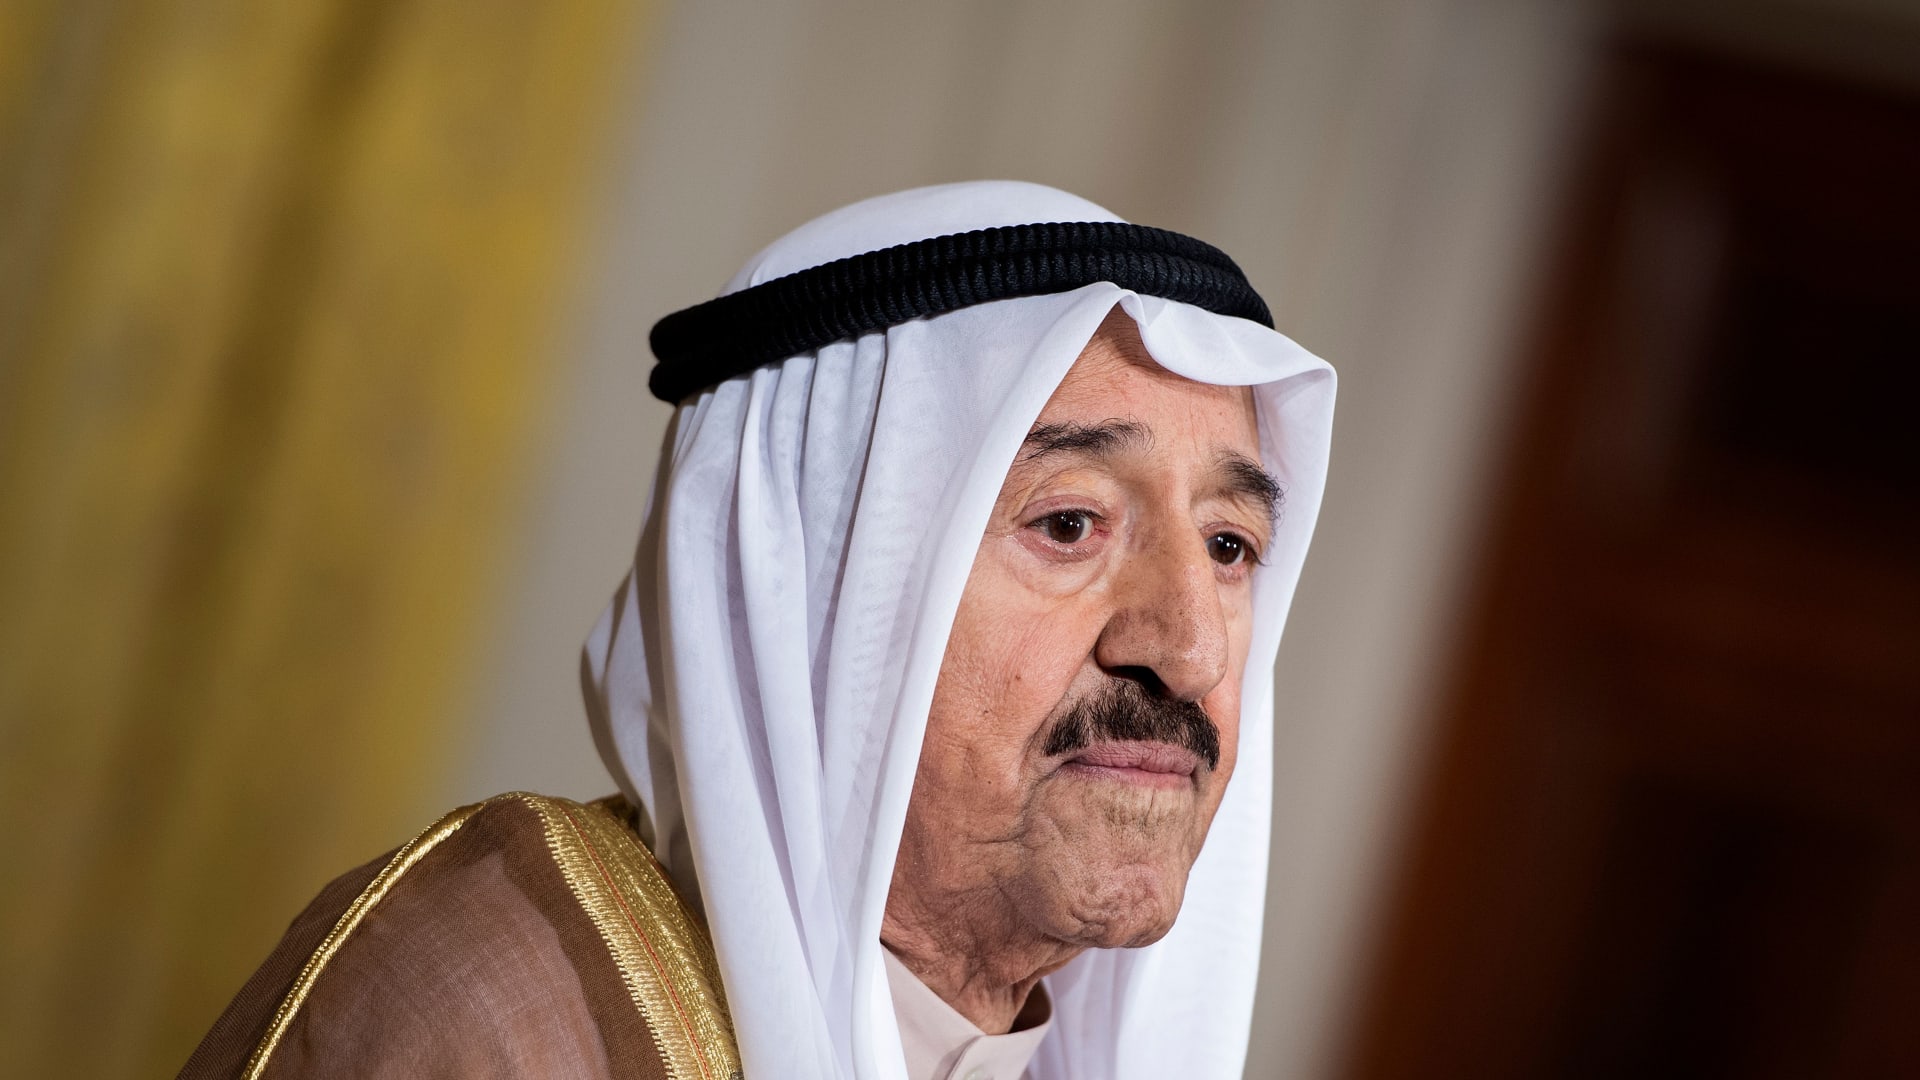 شاهد.. لحظة إعلان وفاة أمير الكويت الشيخ صباح الأحمد الجابر الصباح